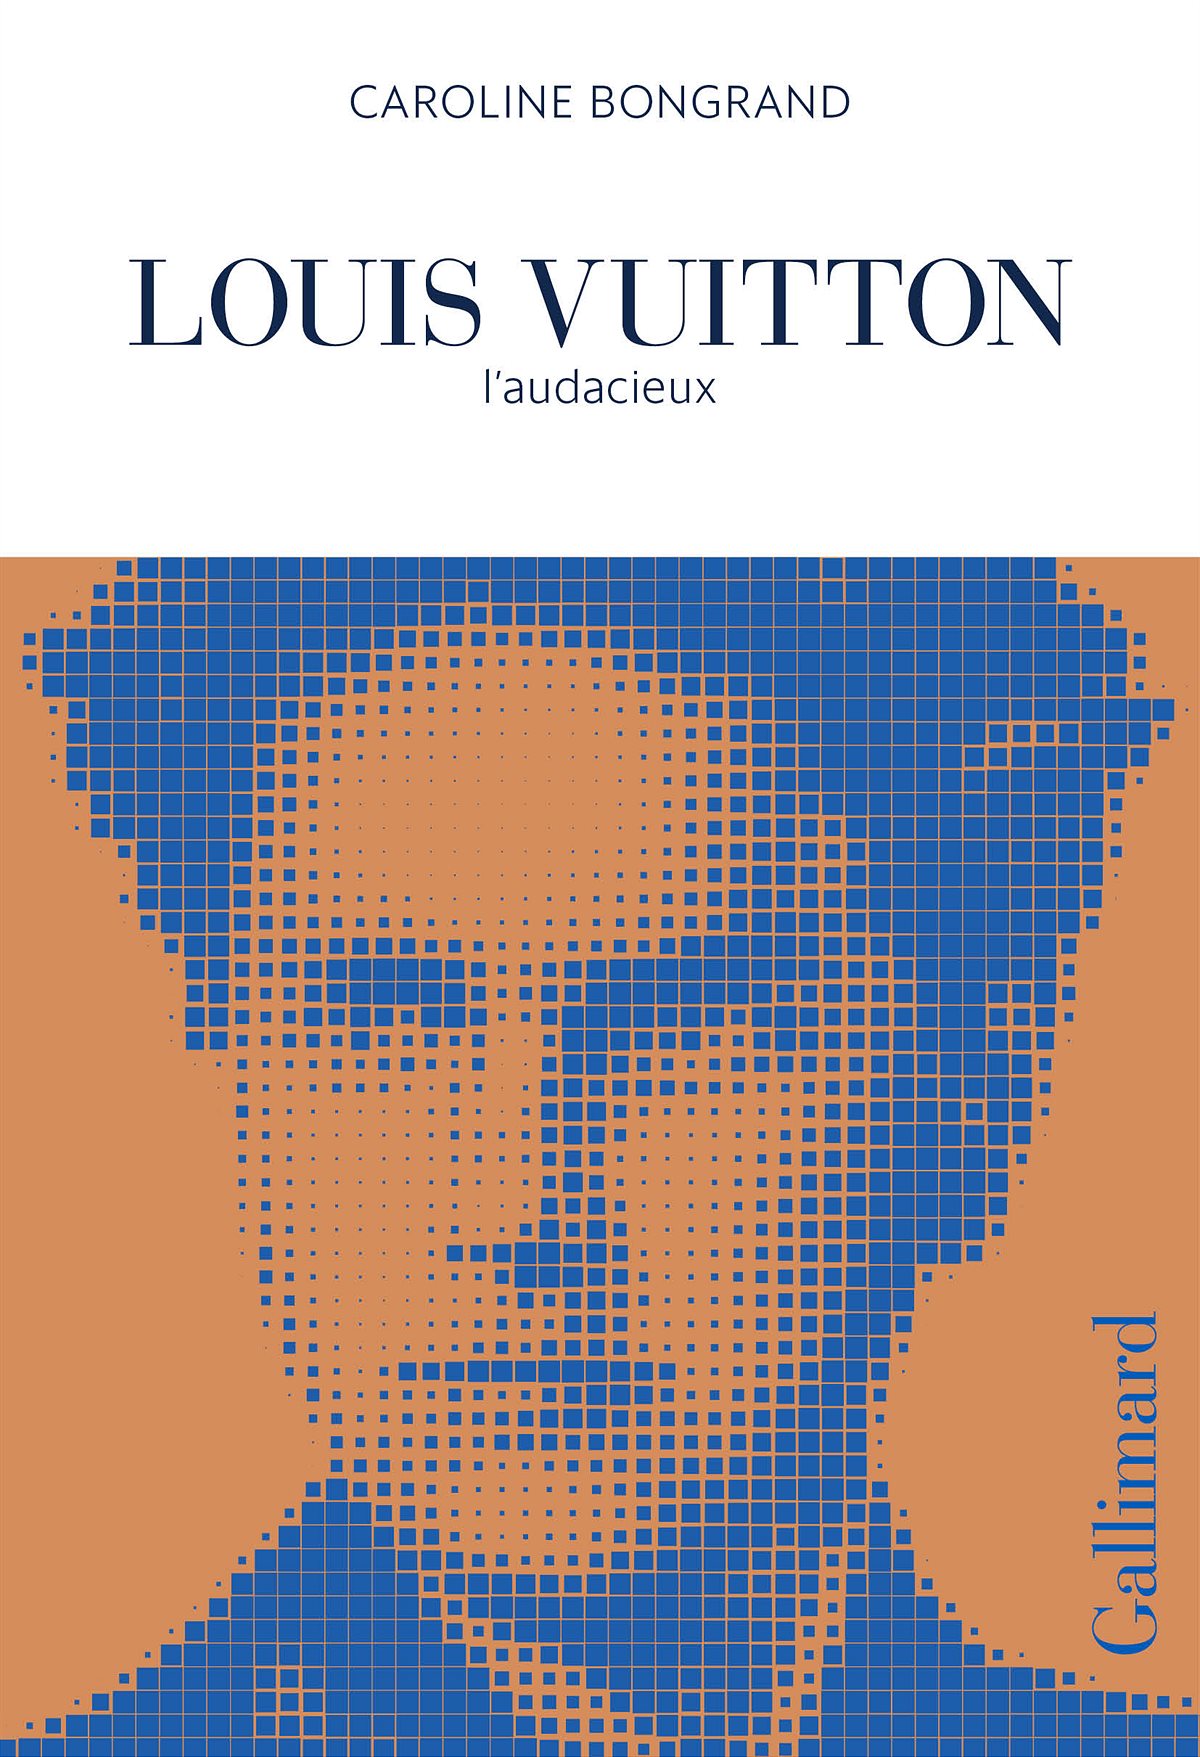 LOUIS VUITTON_LV200_NOVEL LAUDACIEUX (1)